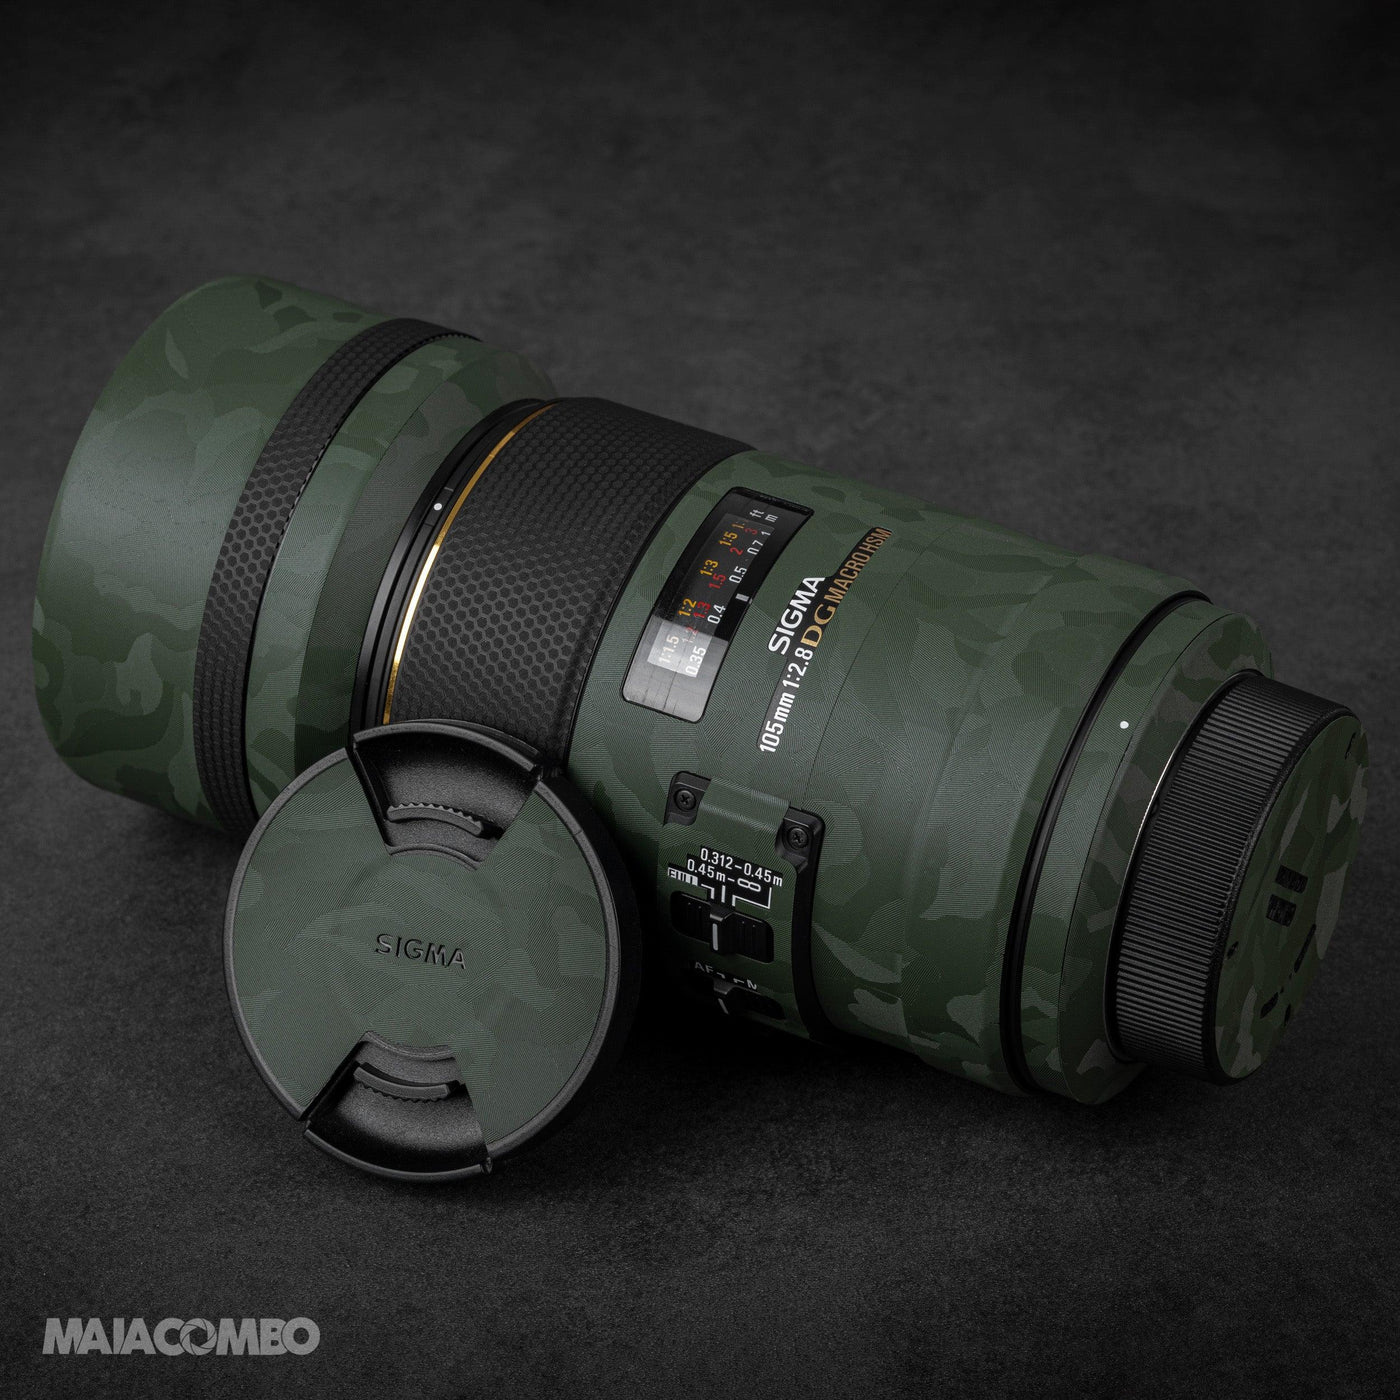 SIGMA 105mm/2.8 DG.MACRO/HSM Lens Skin - MAIACOMBO